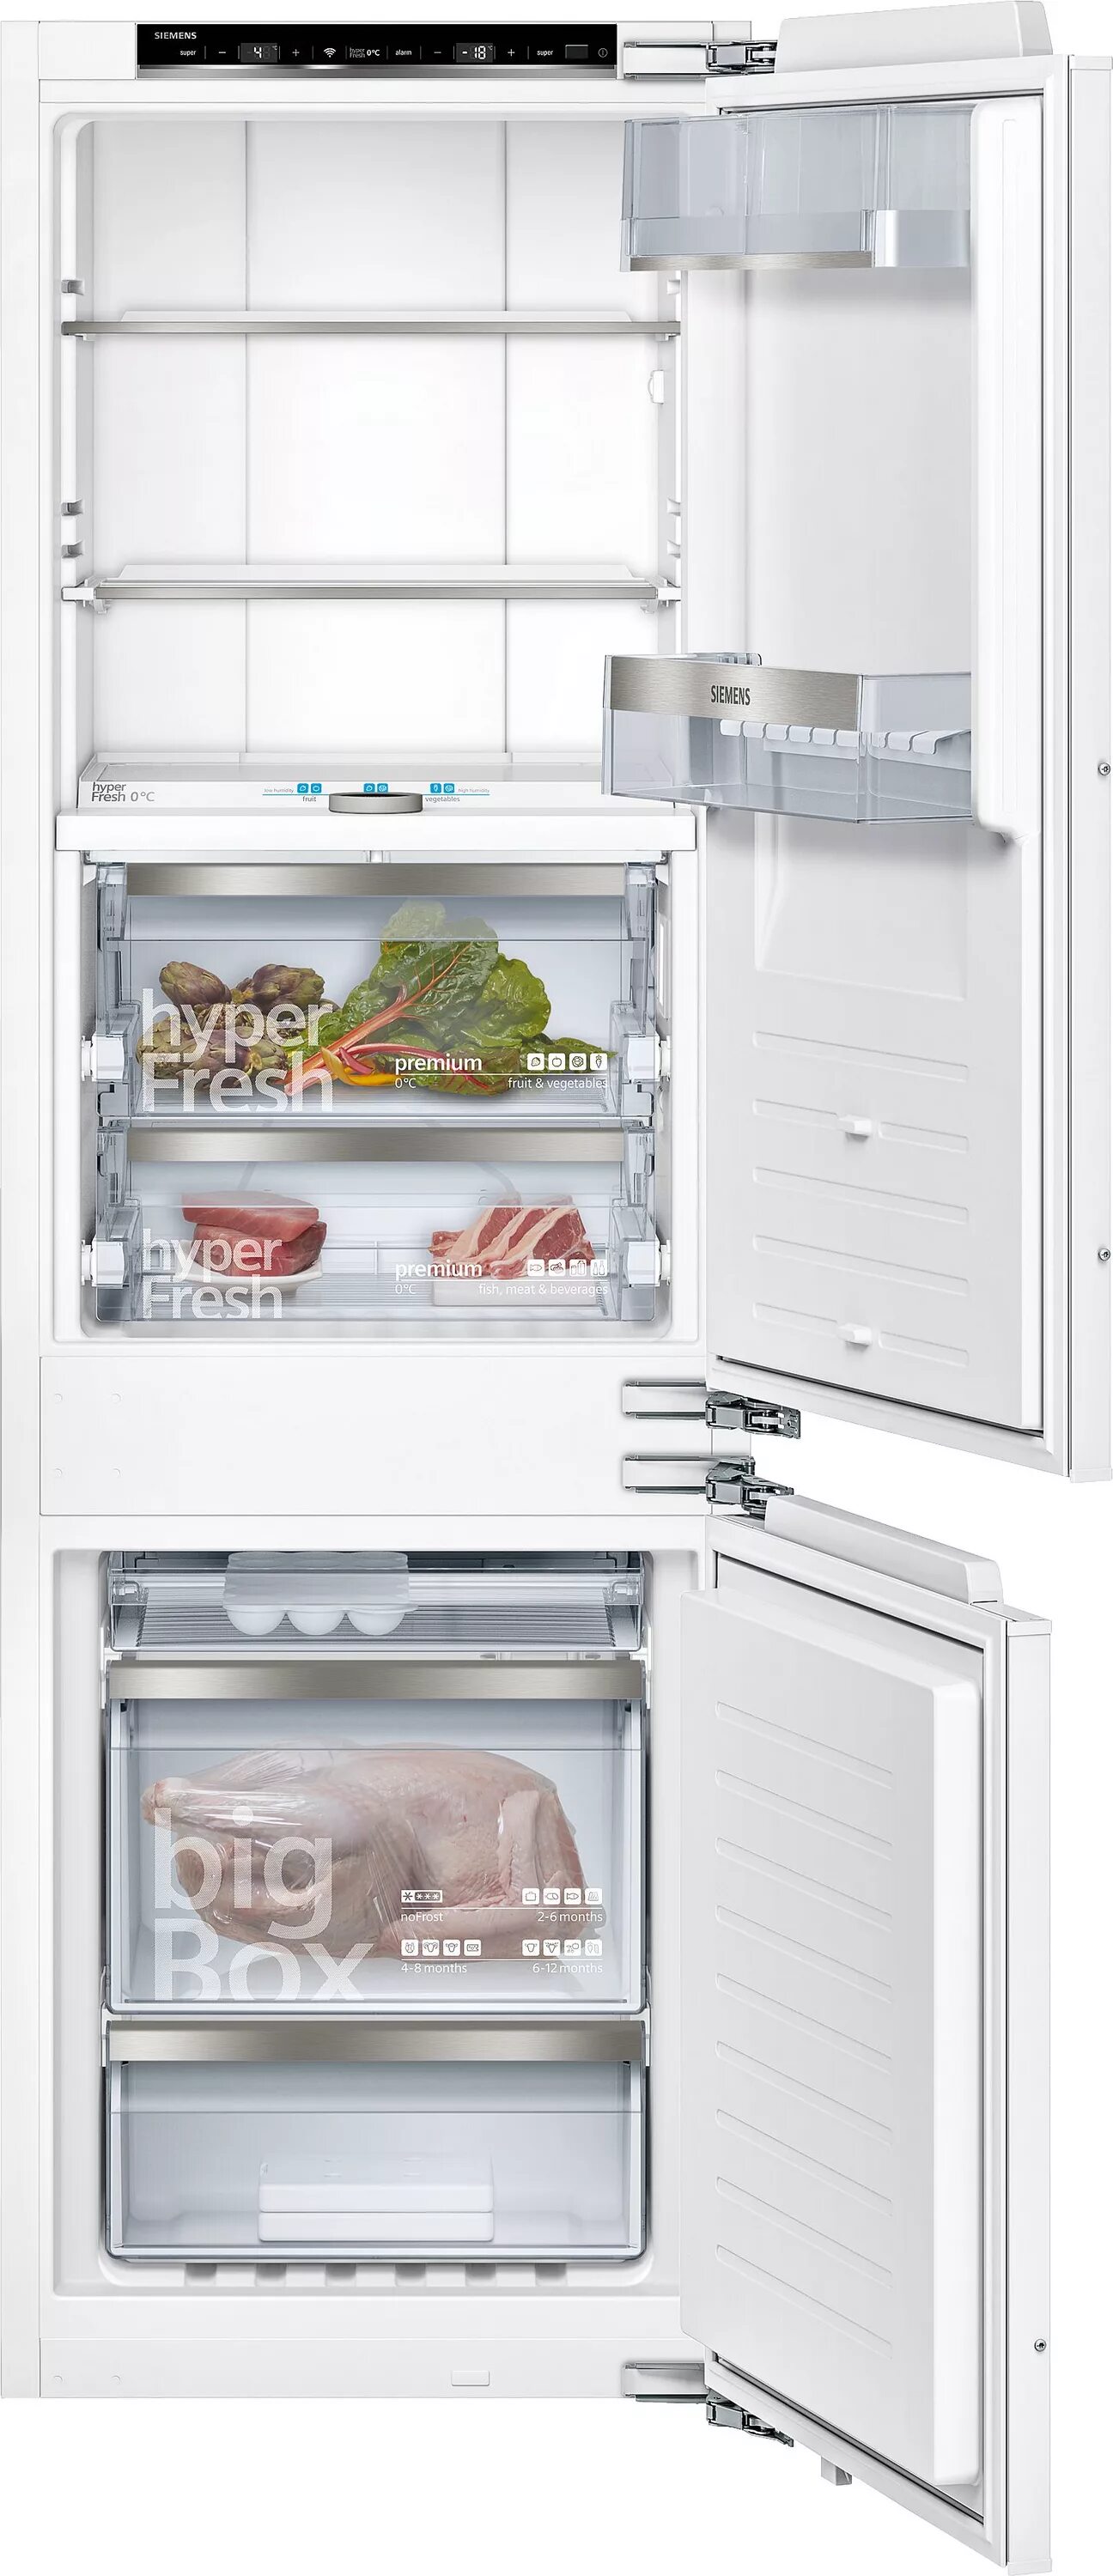 Встроенный холодильник no frost двухкамерный встраиваемый. Холодильник встраиваемый Bosch kiv86ns20r. Холодильник Siemens ki86fhd20r. Bosch kif86hd20r. Встраиваемый холодильник Bosch kif25a65.